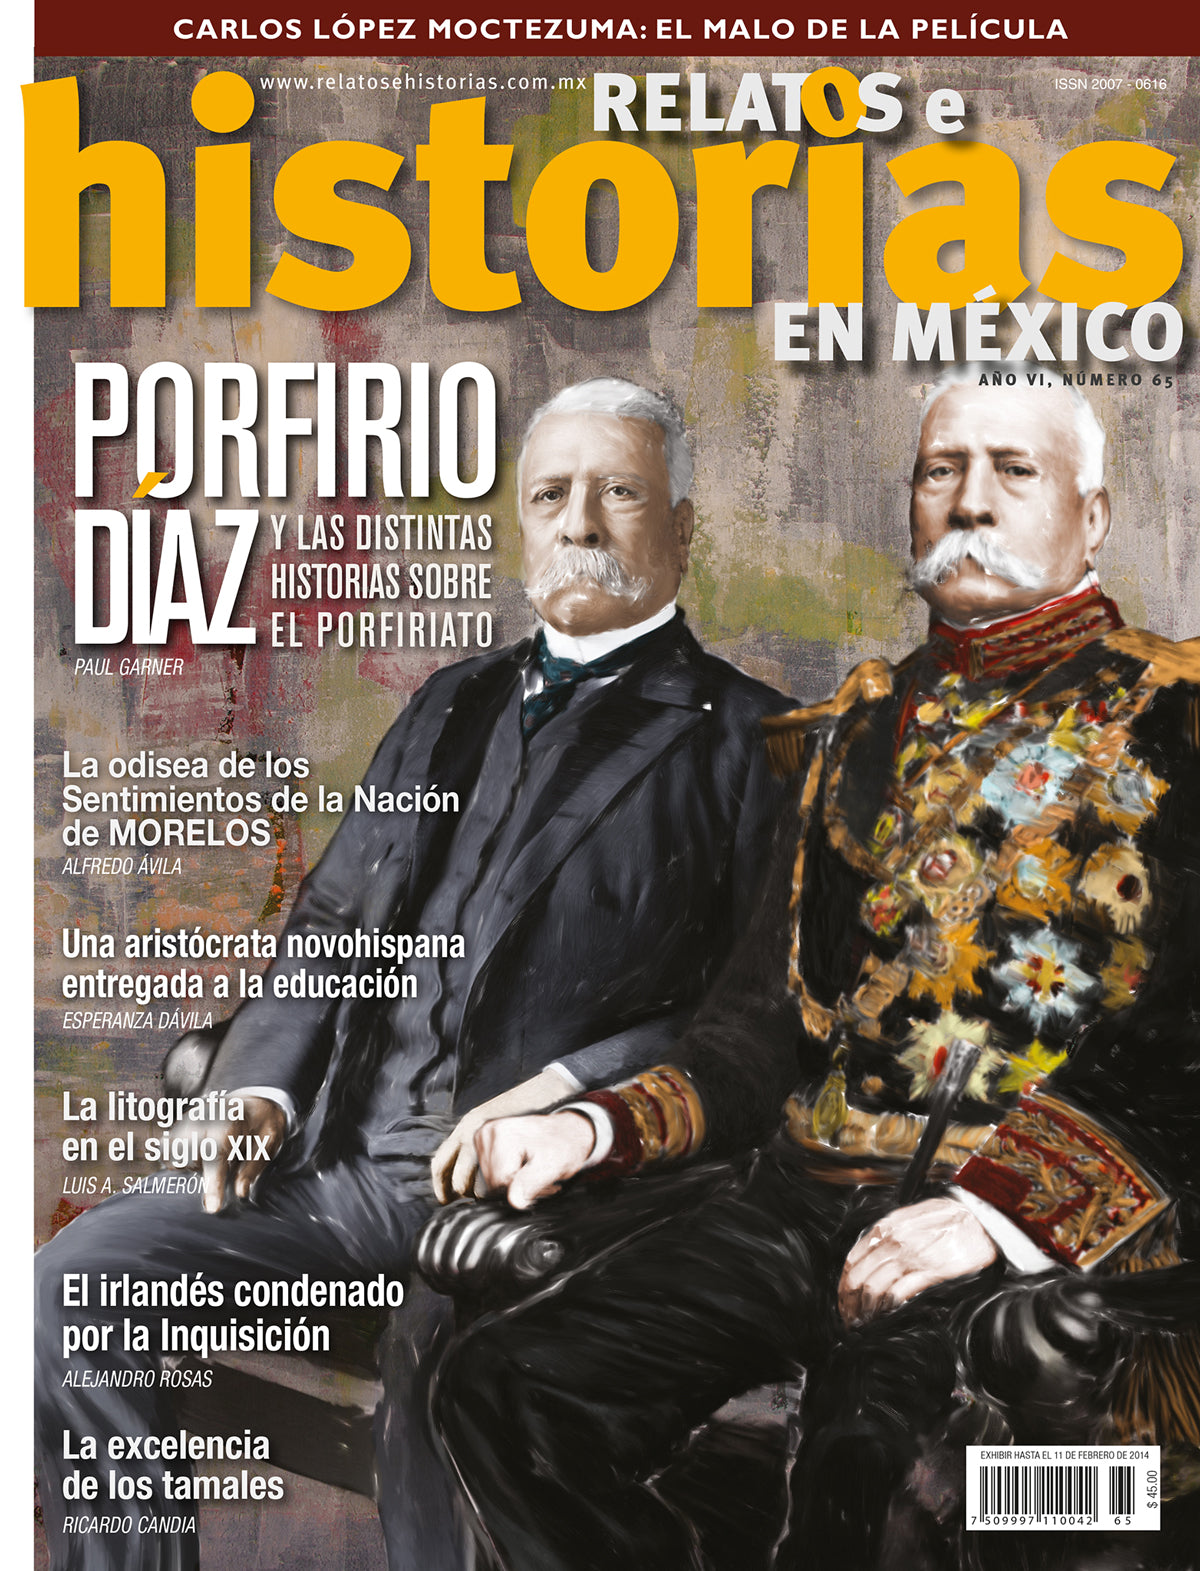 Porfirio Díaz y las distintas historias sobre El Porfiriato